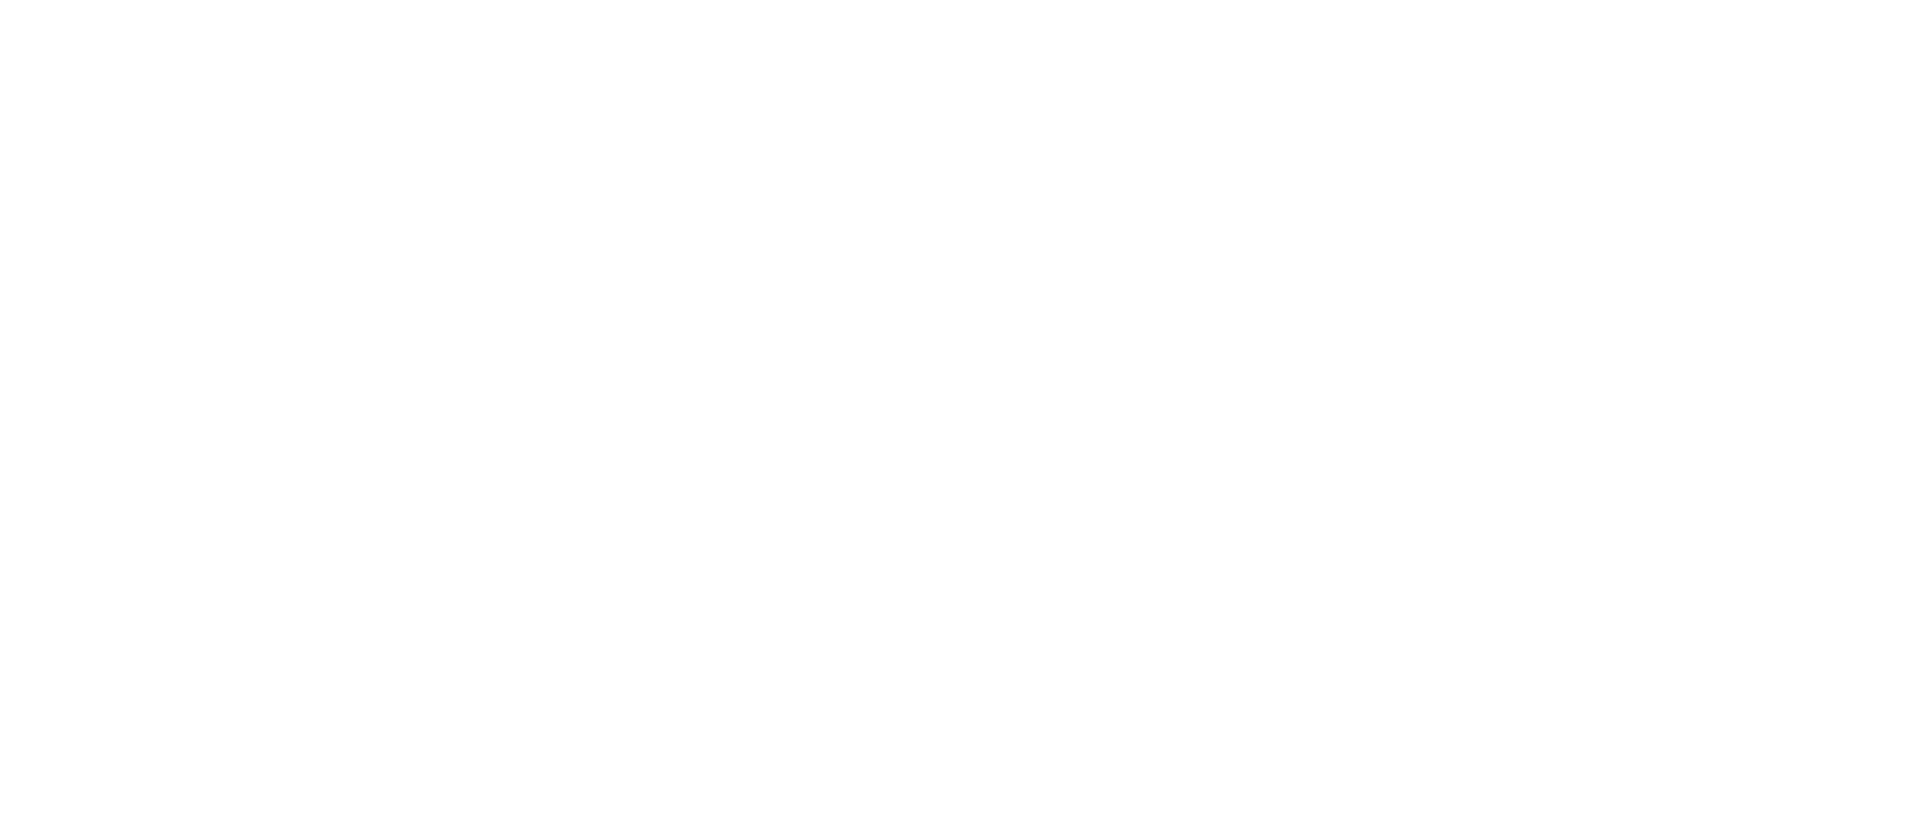 Texas Live! - Live! Arena